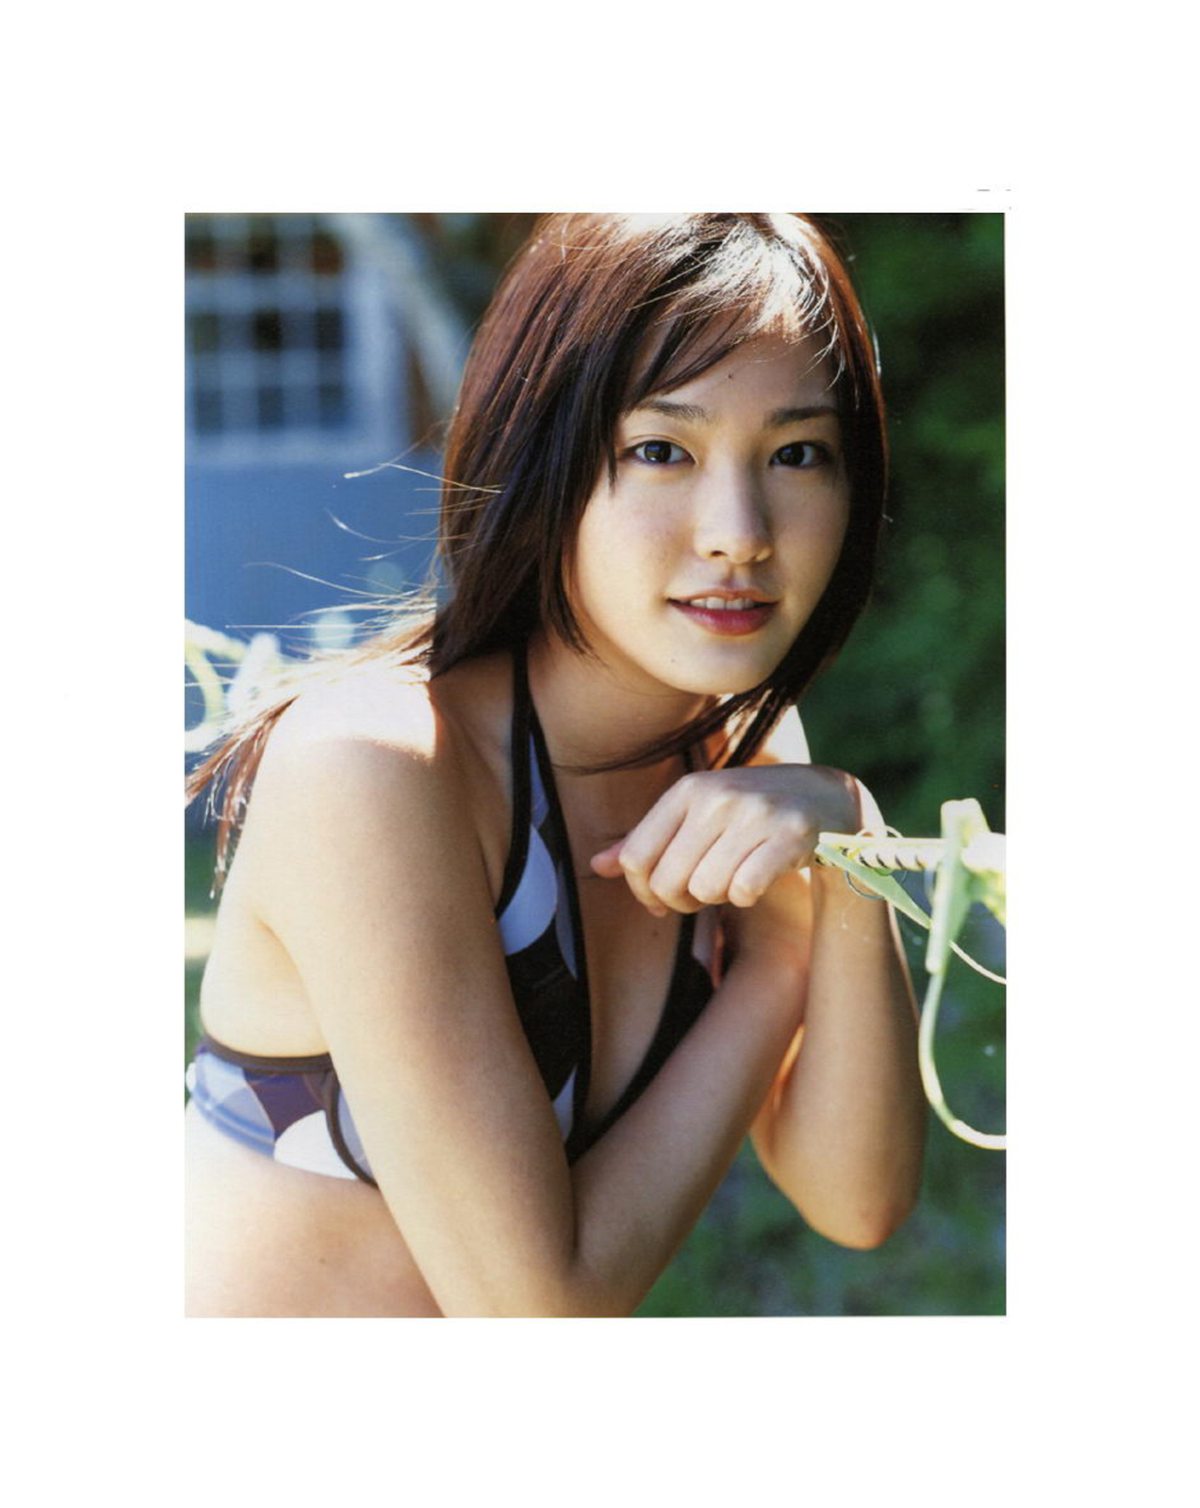 Photobook Yui Aragaki 新垣結衣 Chura Chura ちゅら ちゅら 2006 03 03 0095 3460256134.jpg